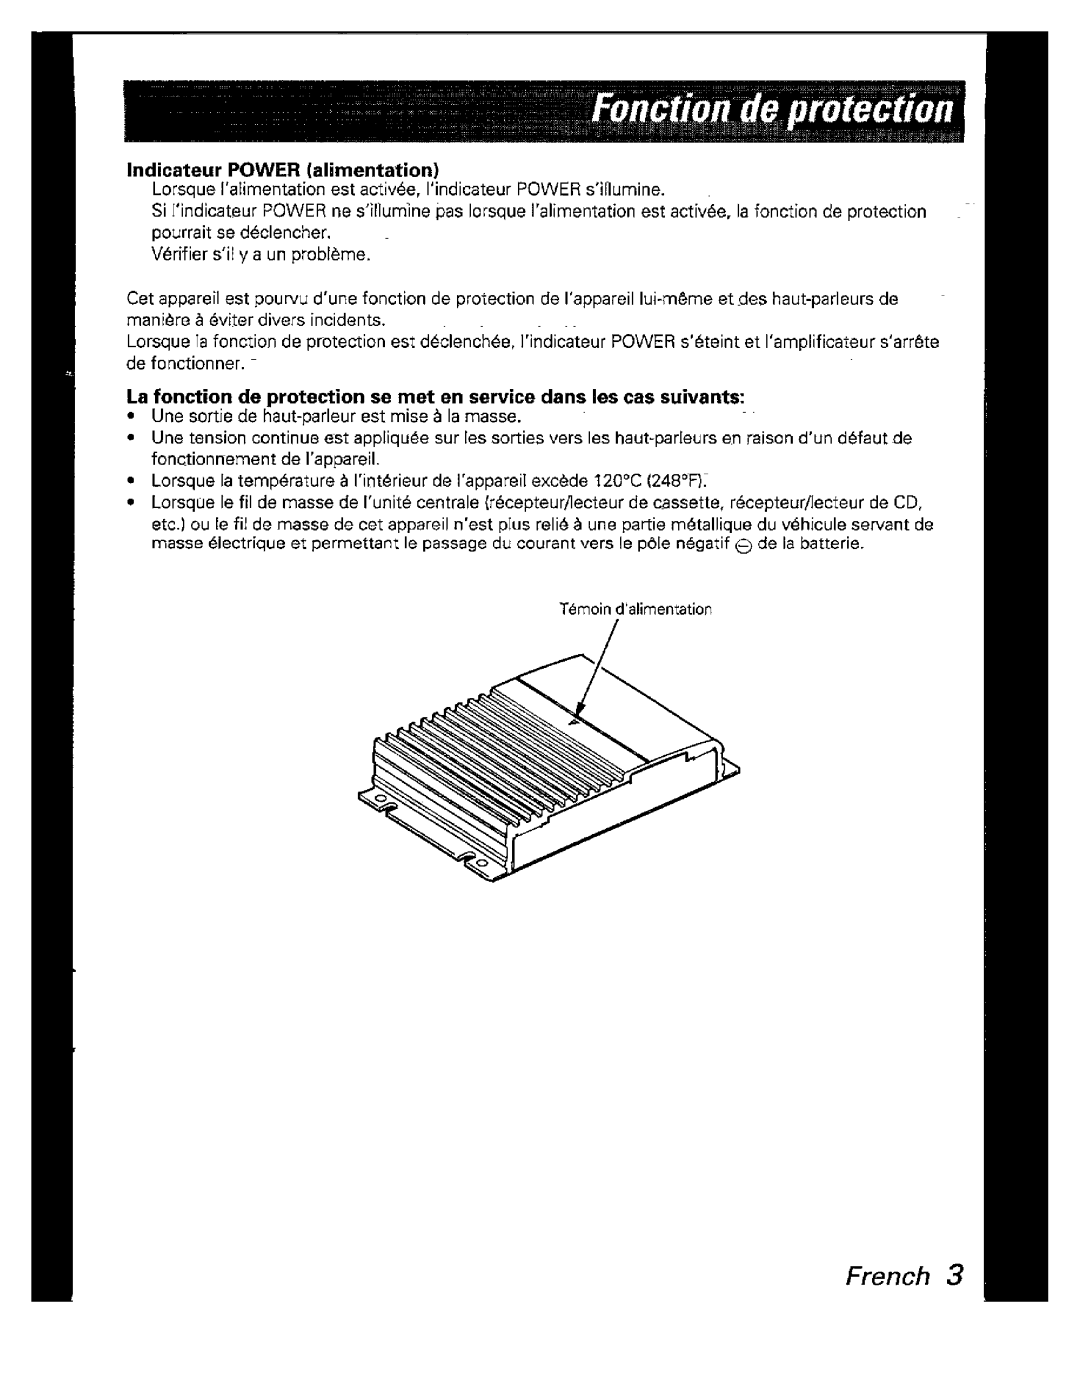 Kenwood KAC-526 manual 